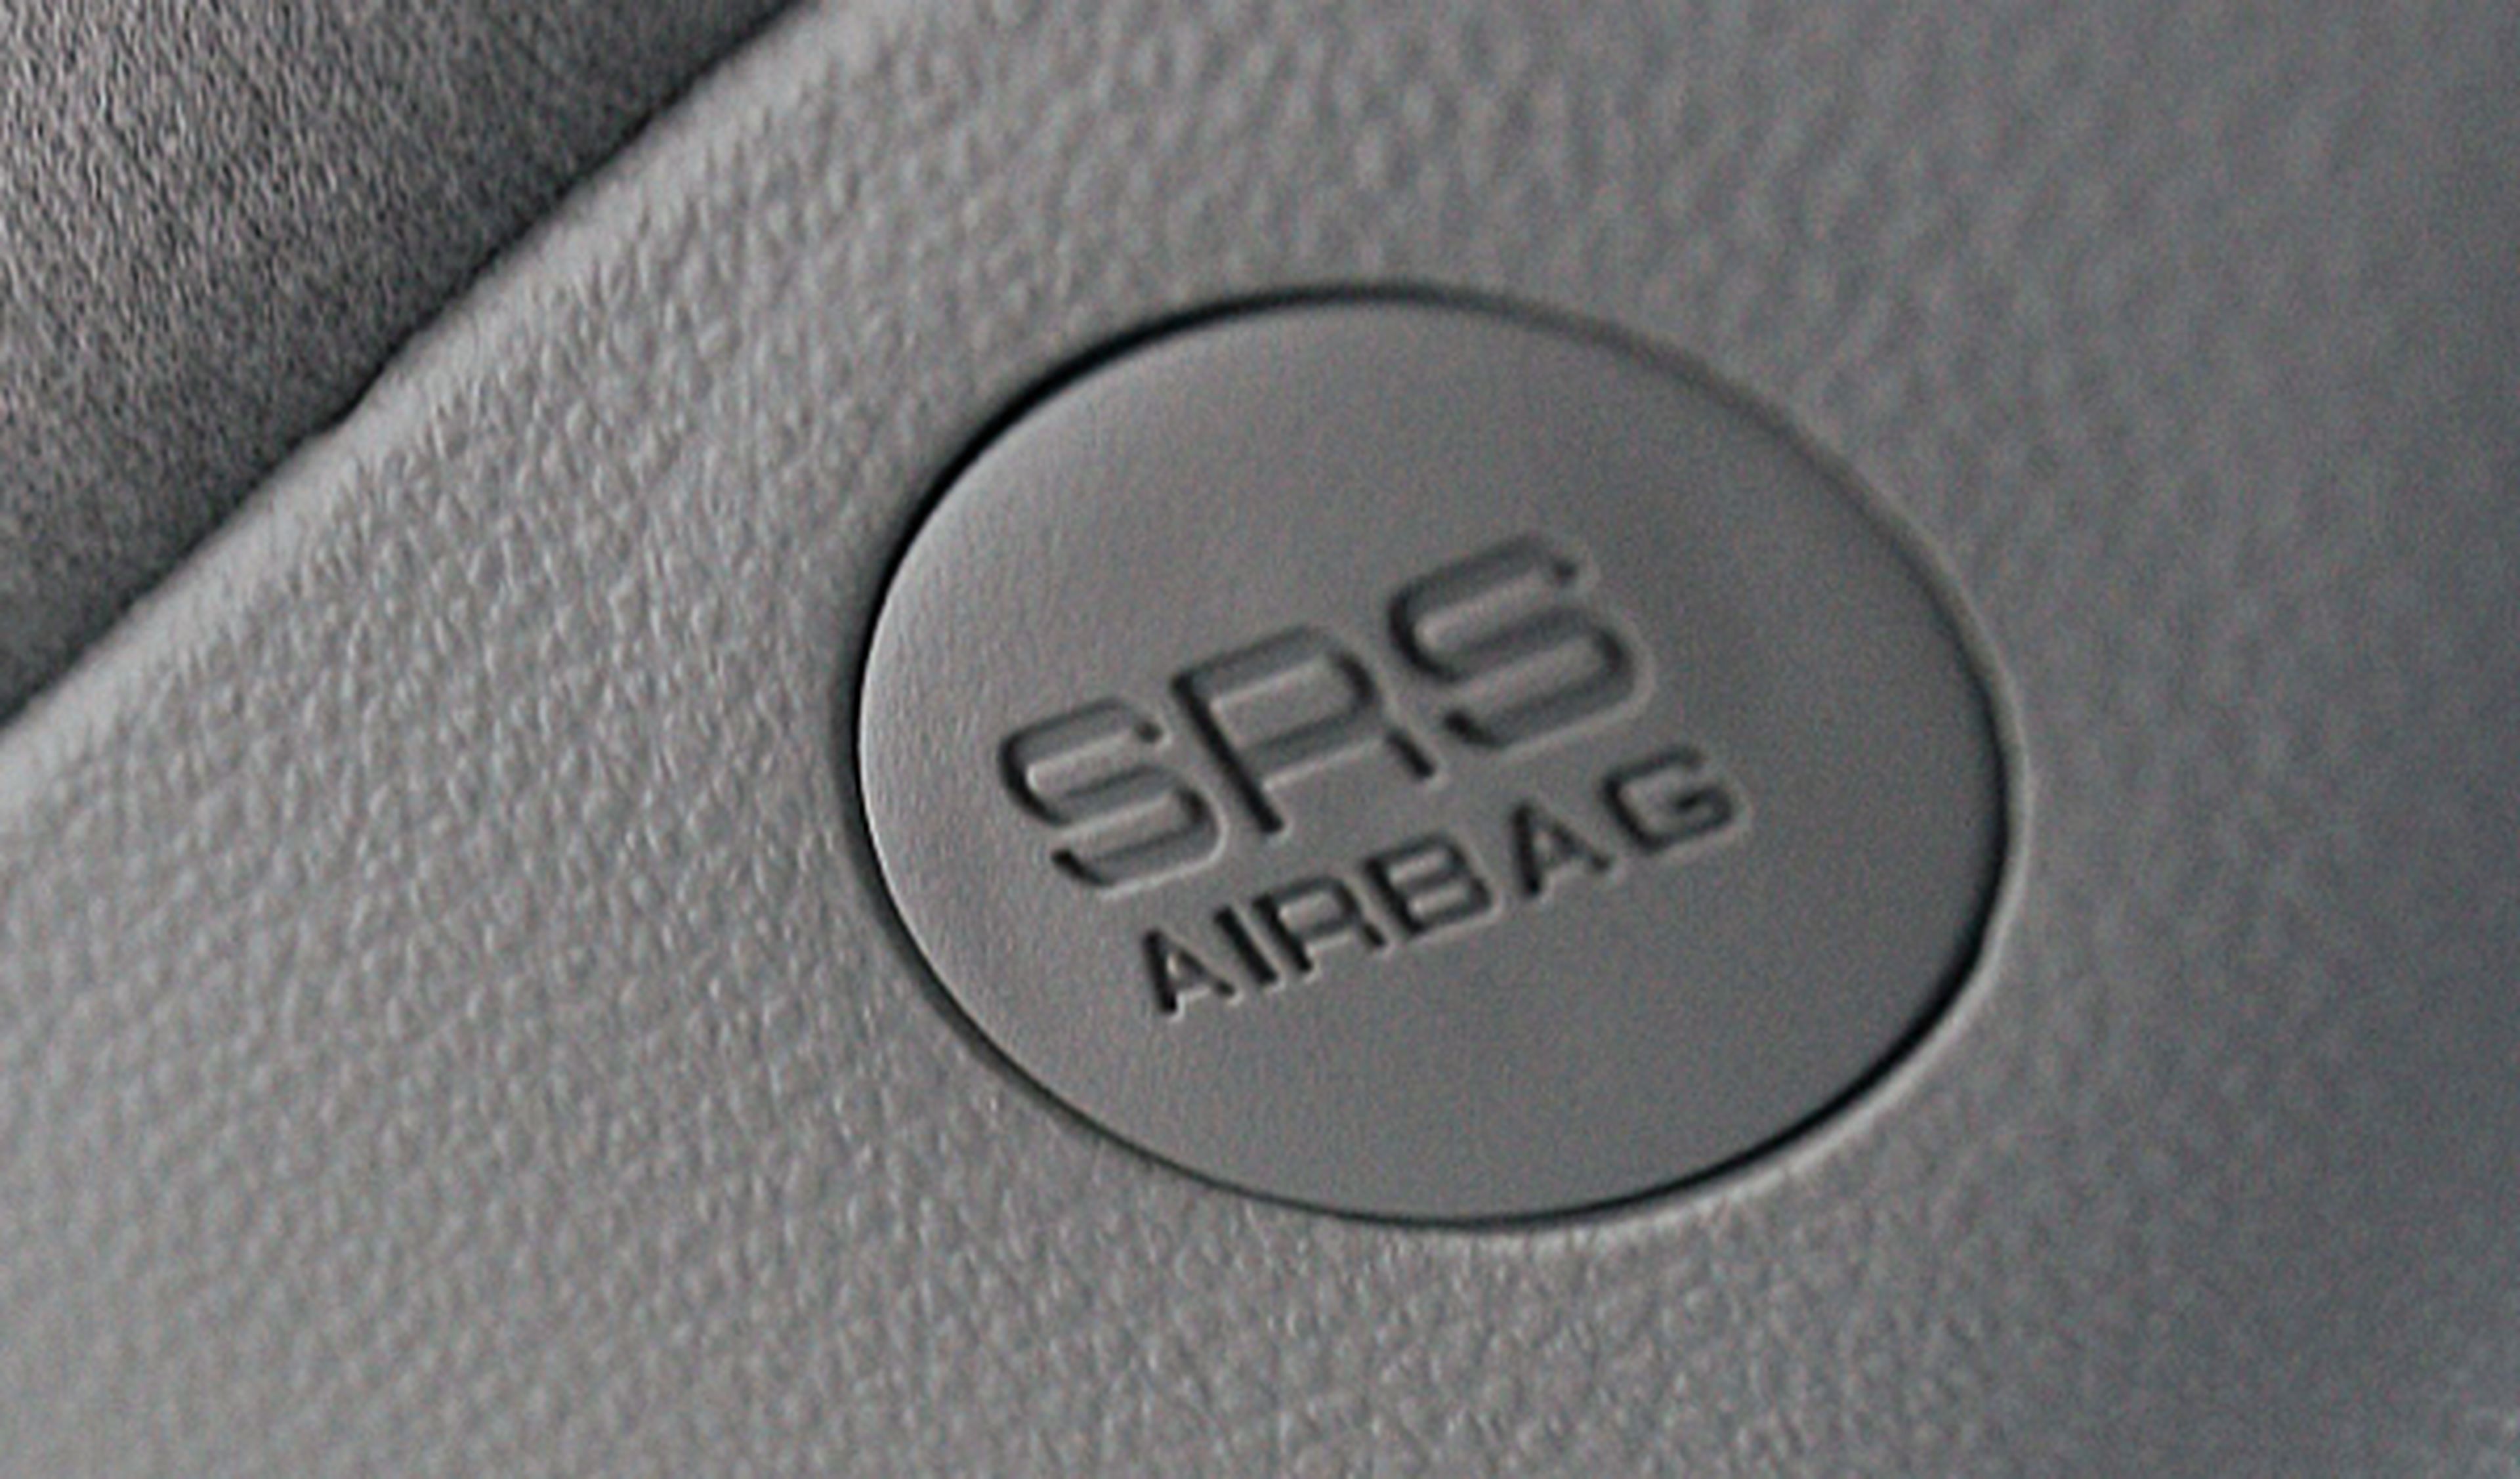 Las gafas protegen los ojos en caso de disparo del airbag